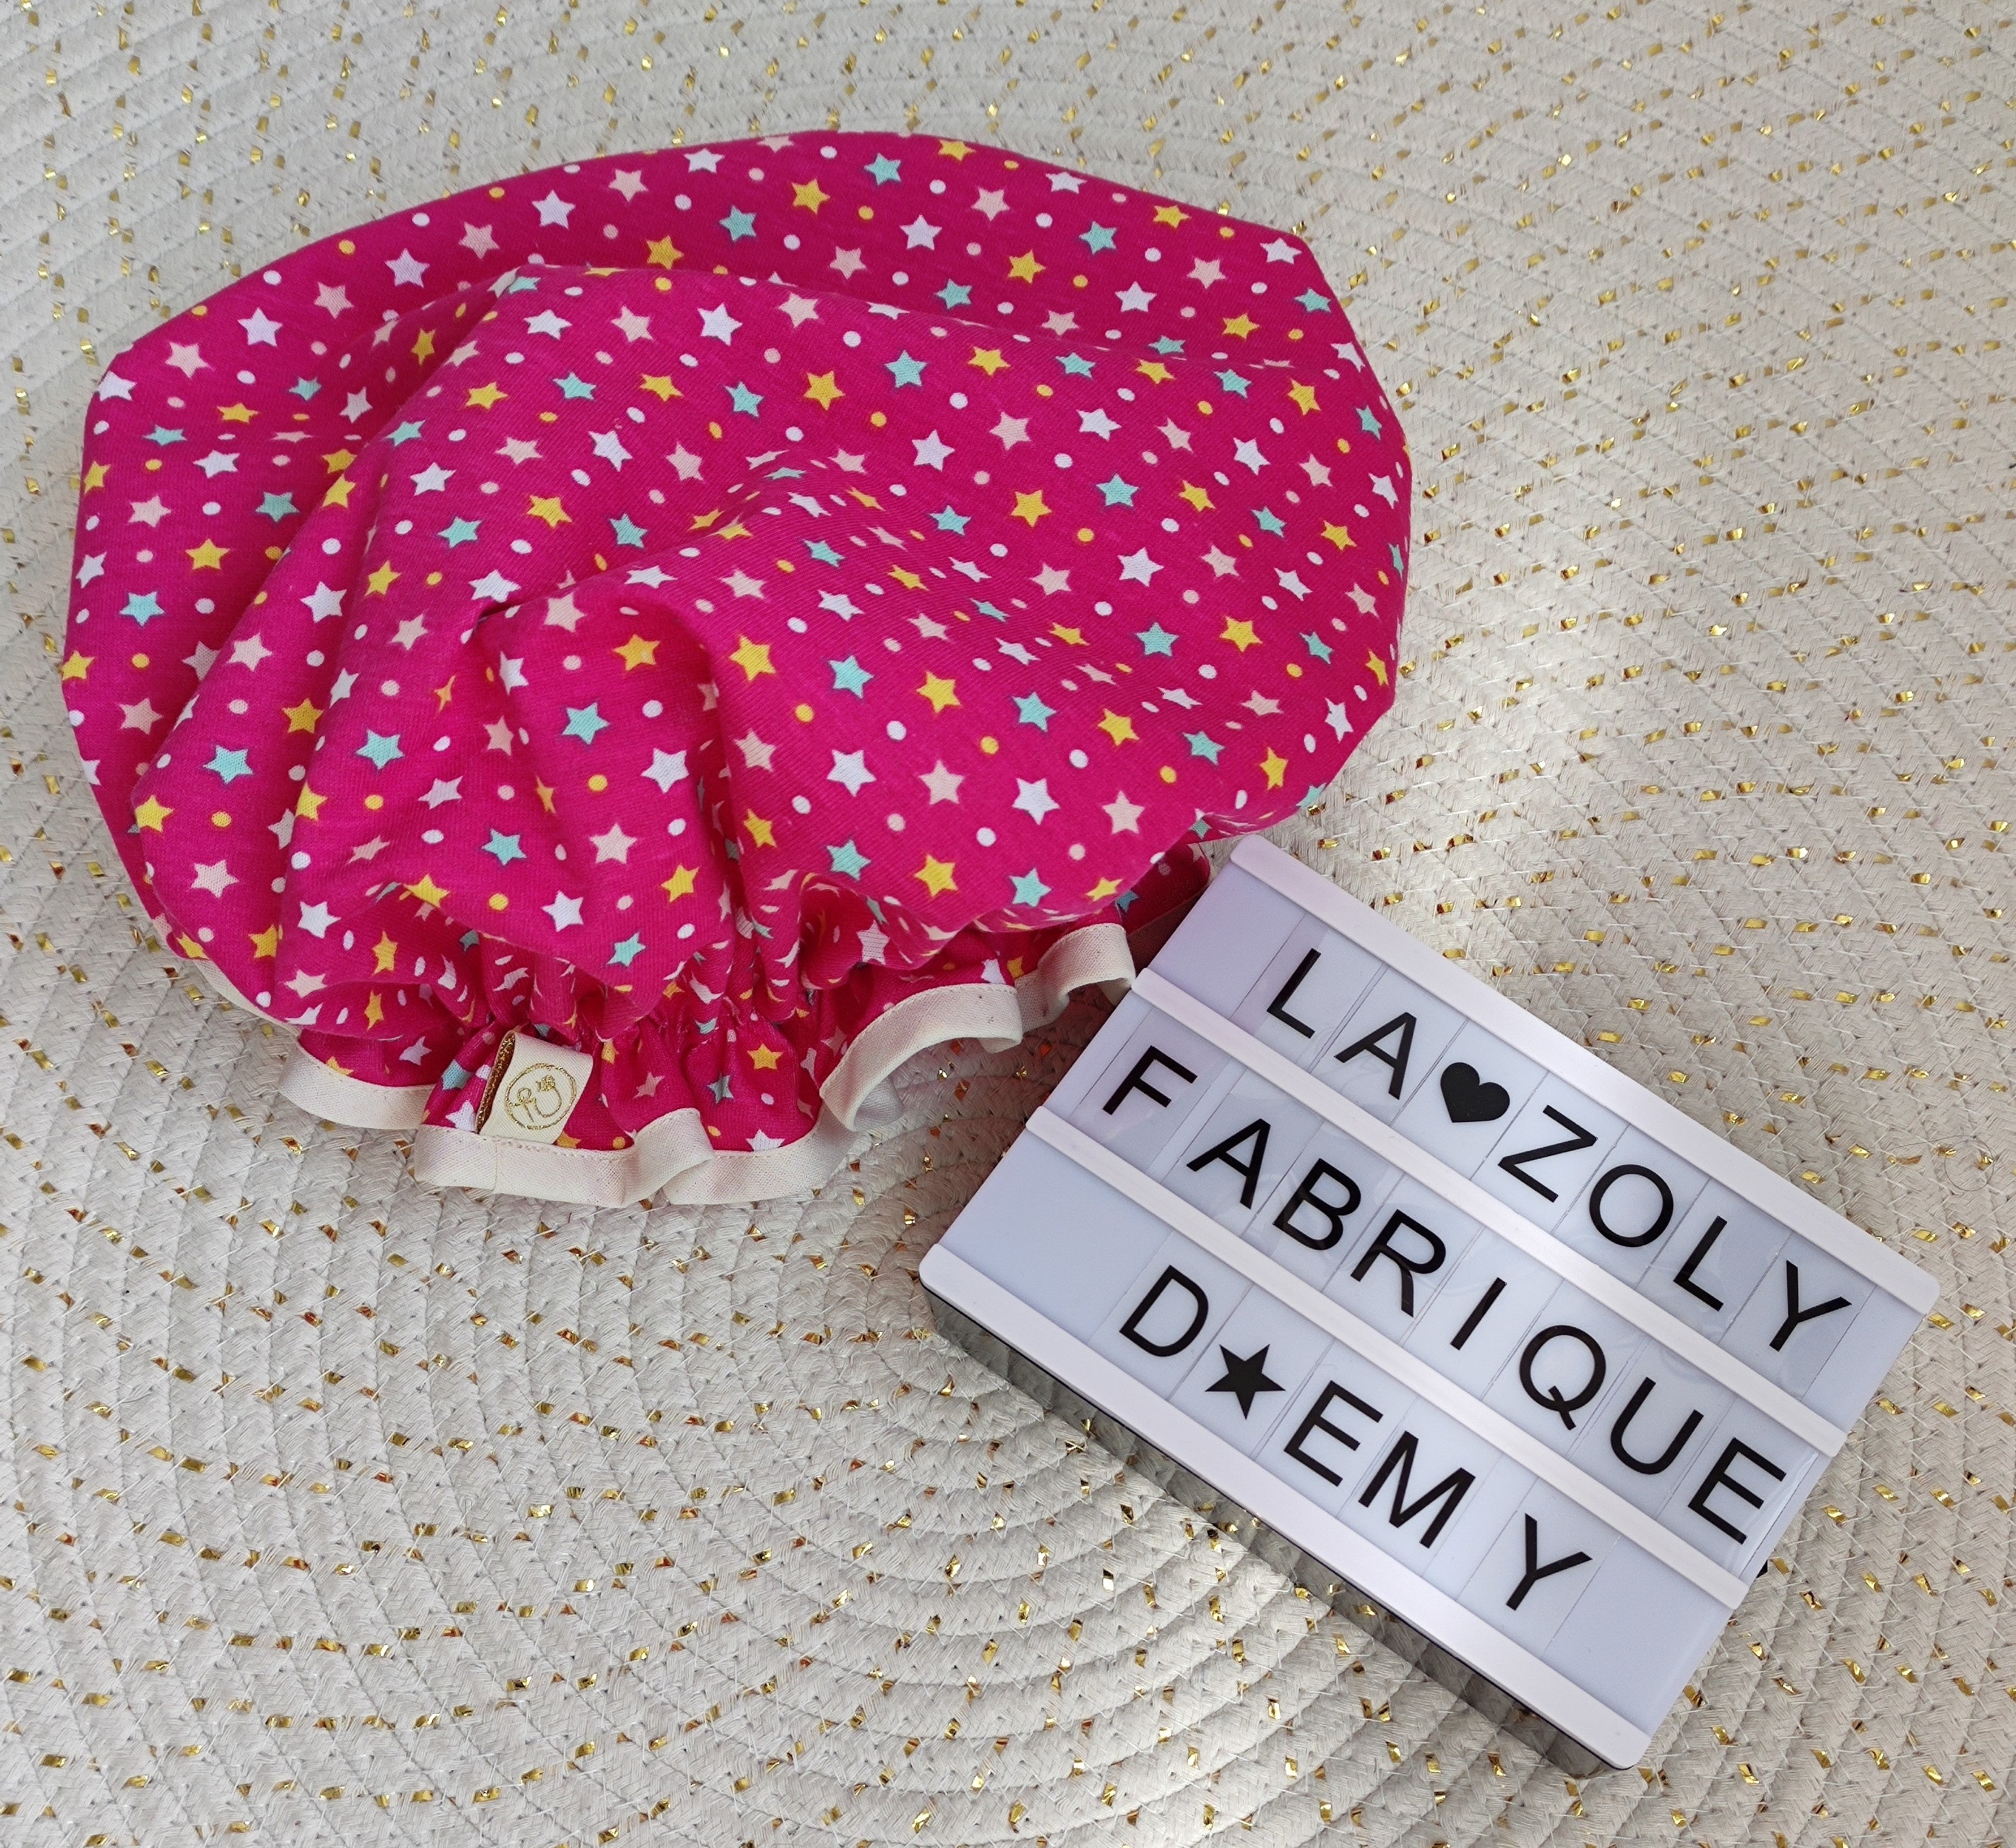 Charlotte de Douche – La Zoly Fabrique d'Emy